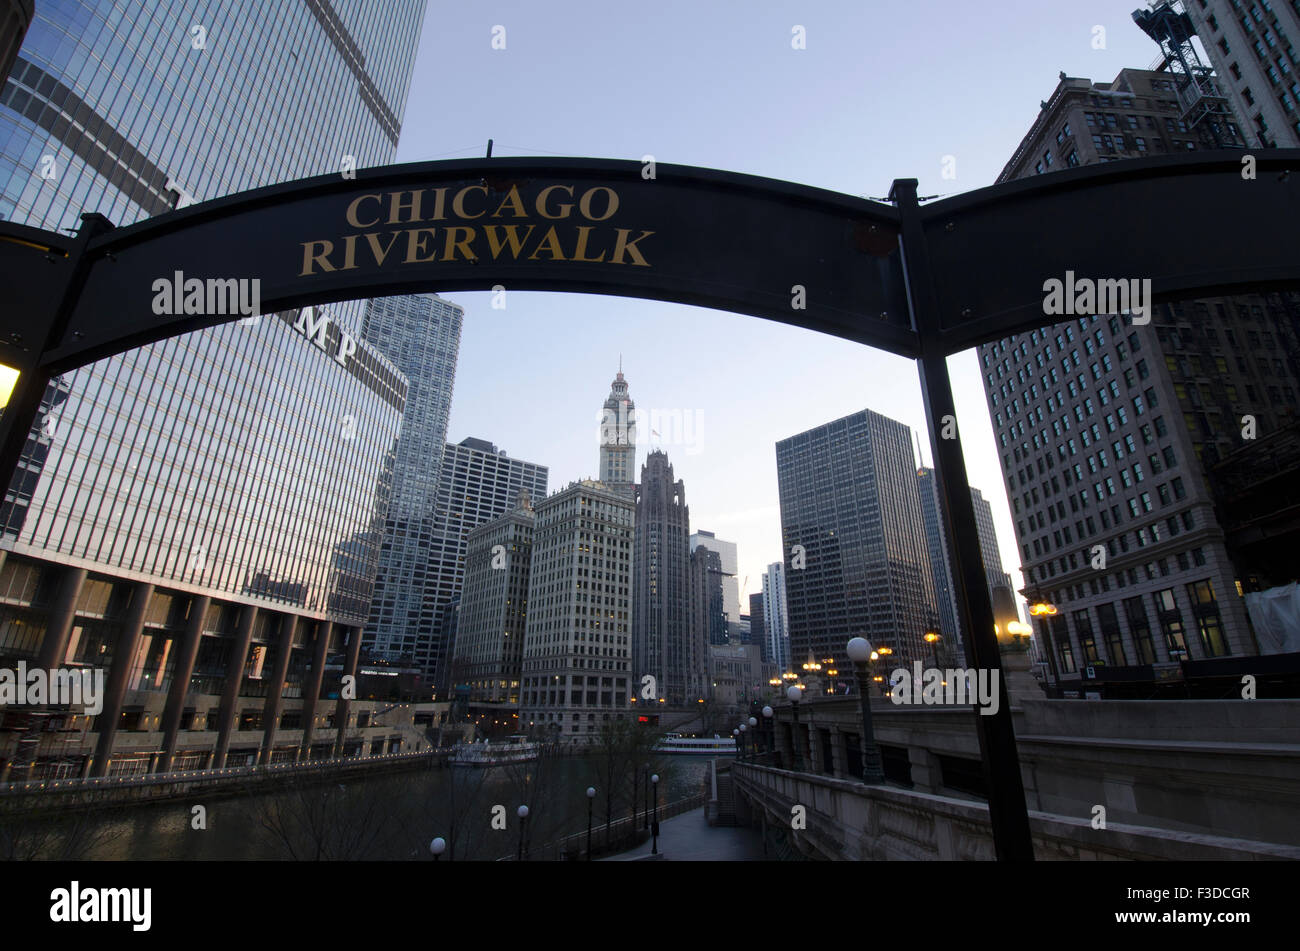 Sign on Chicago Riverwalk against sky Stock Photo